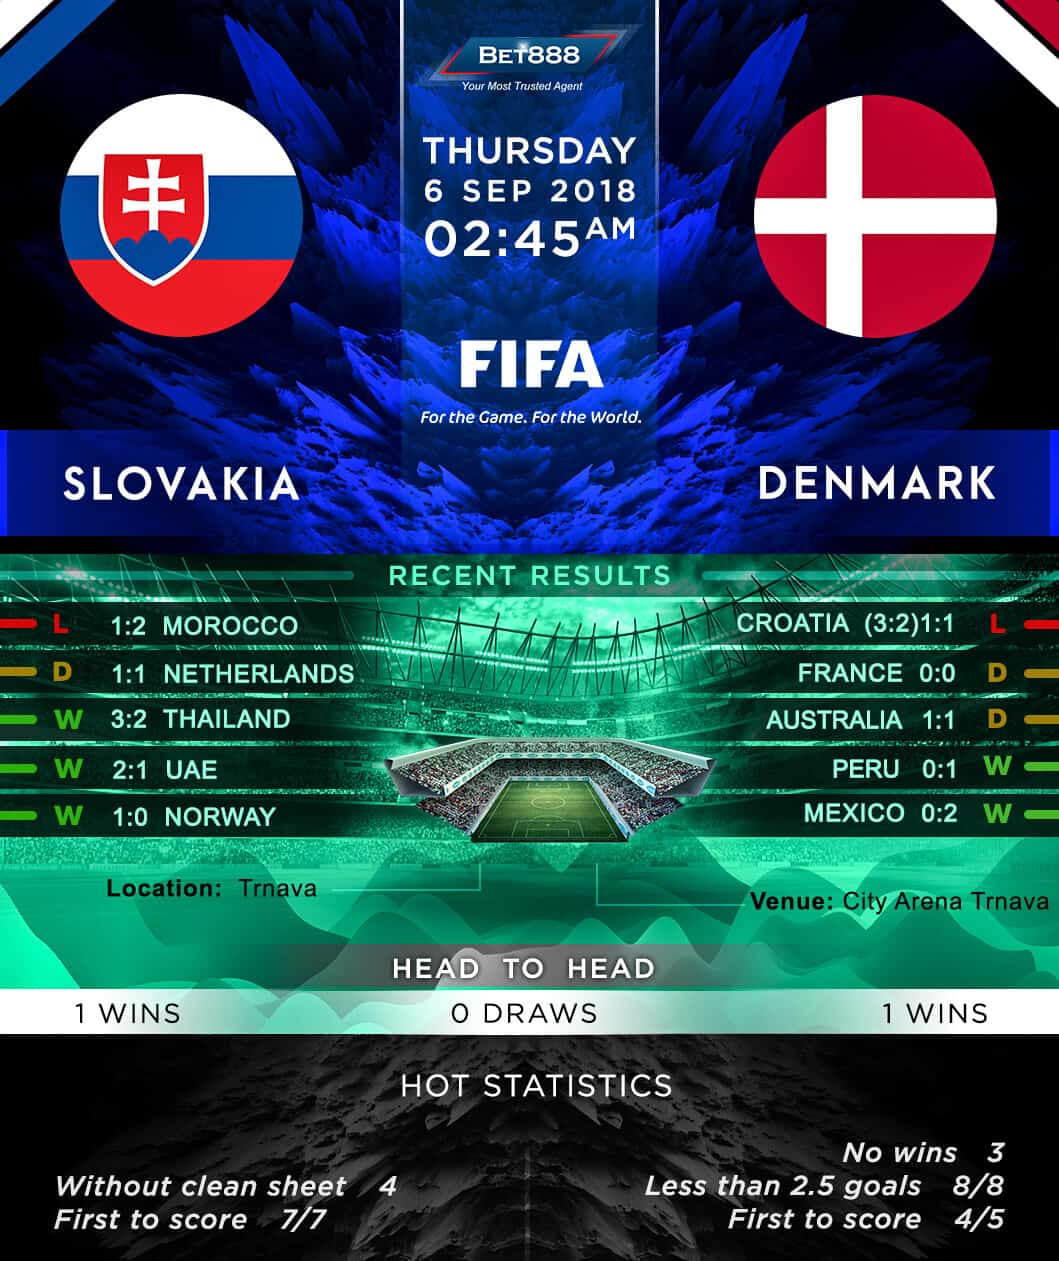 Slovakia vs Denmark 06/09/18